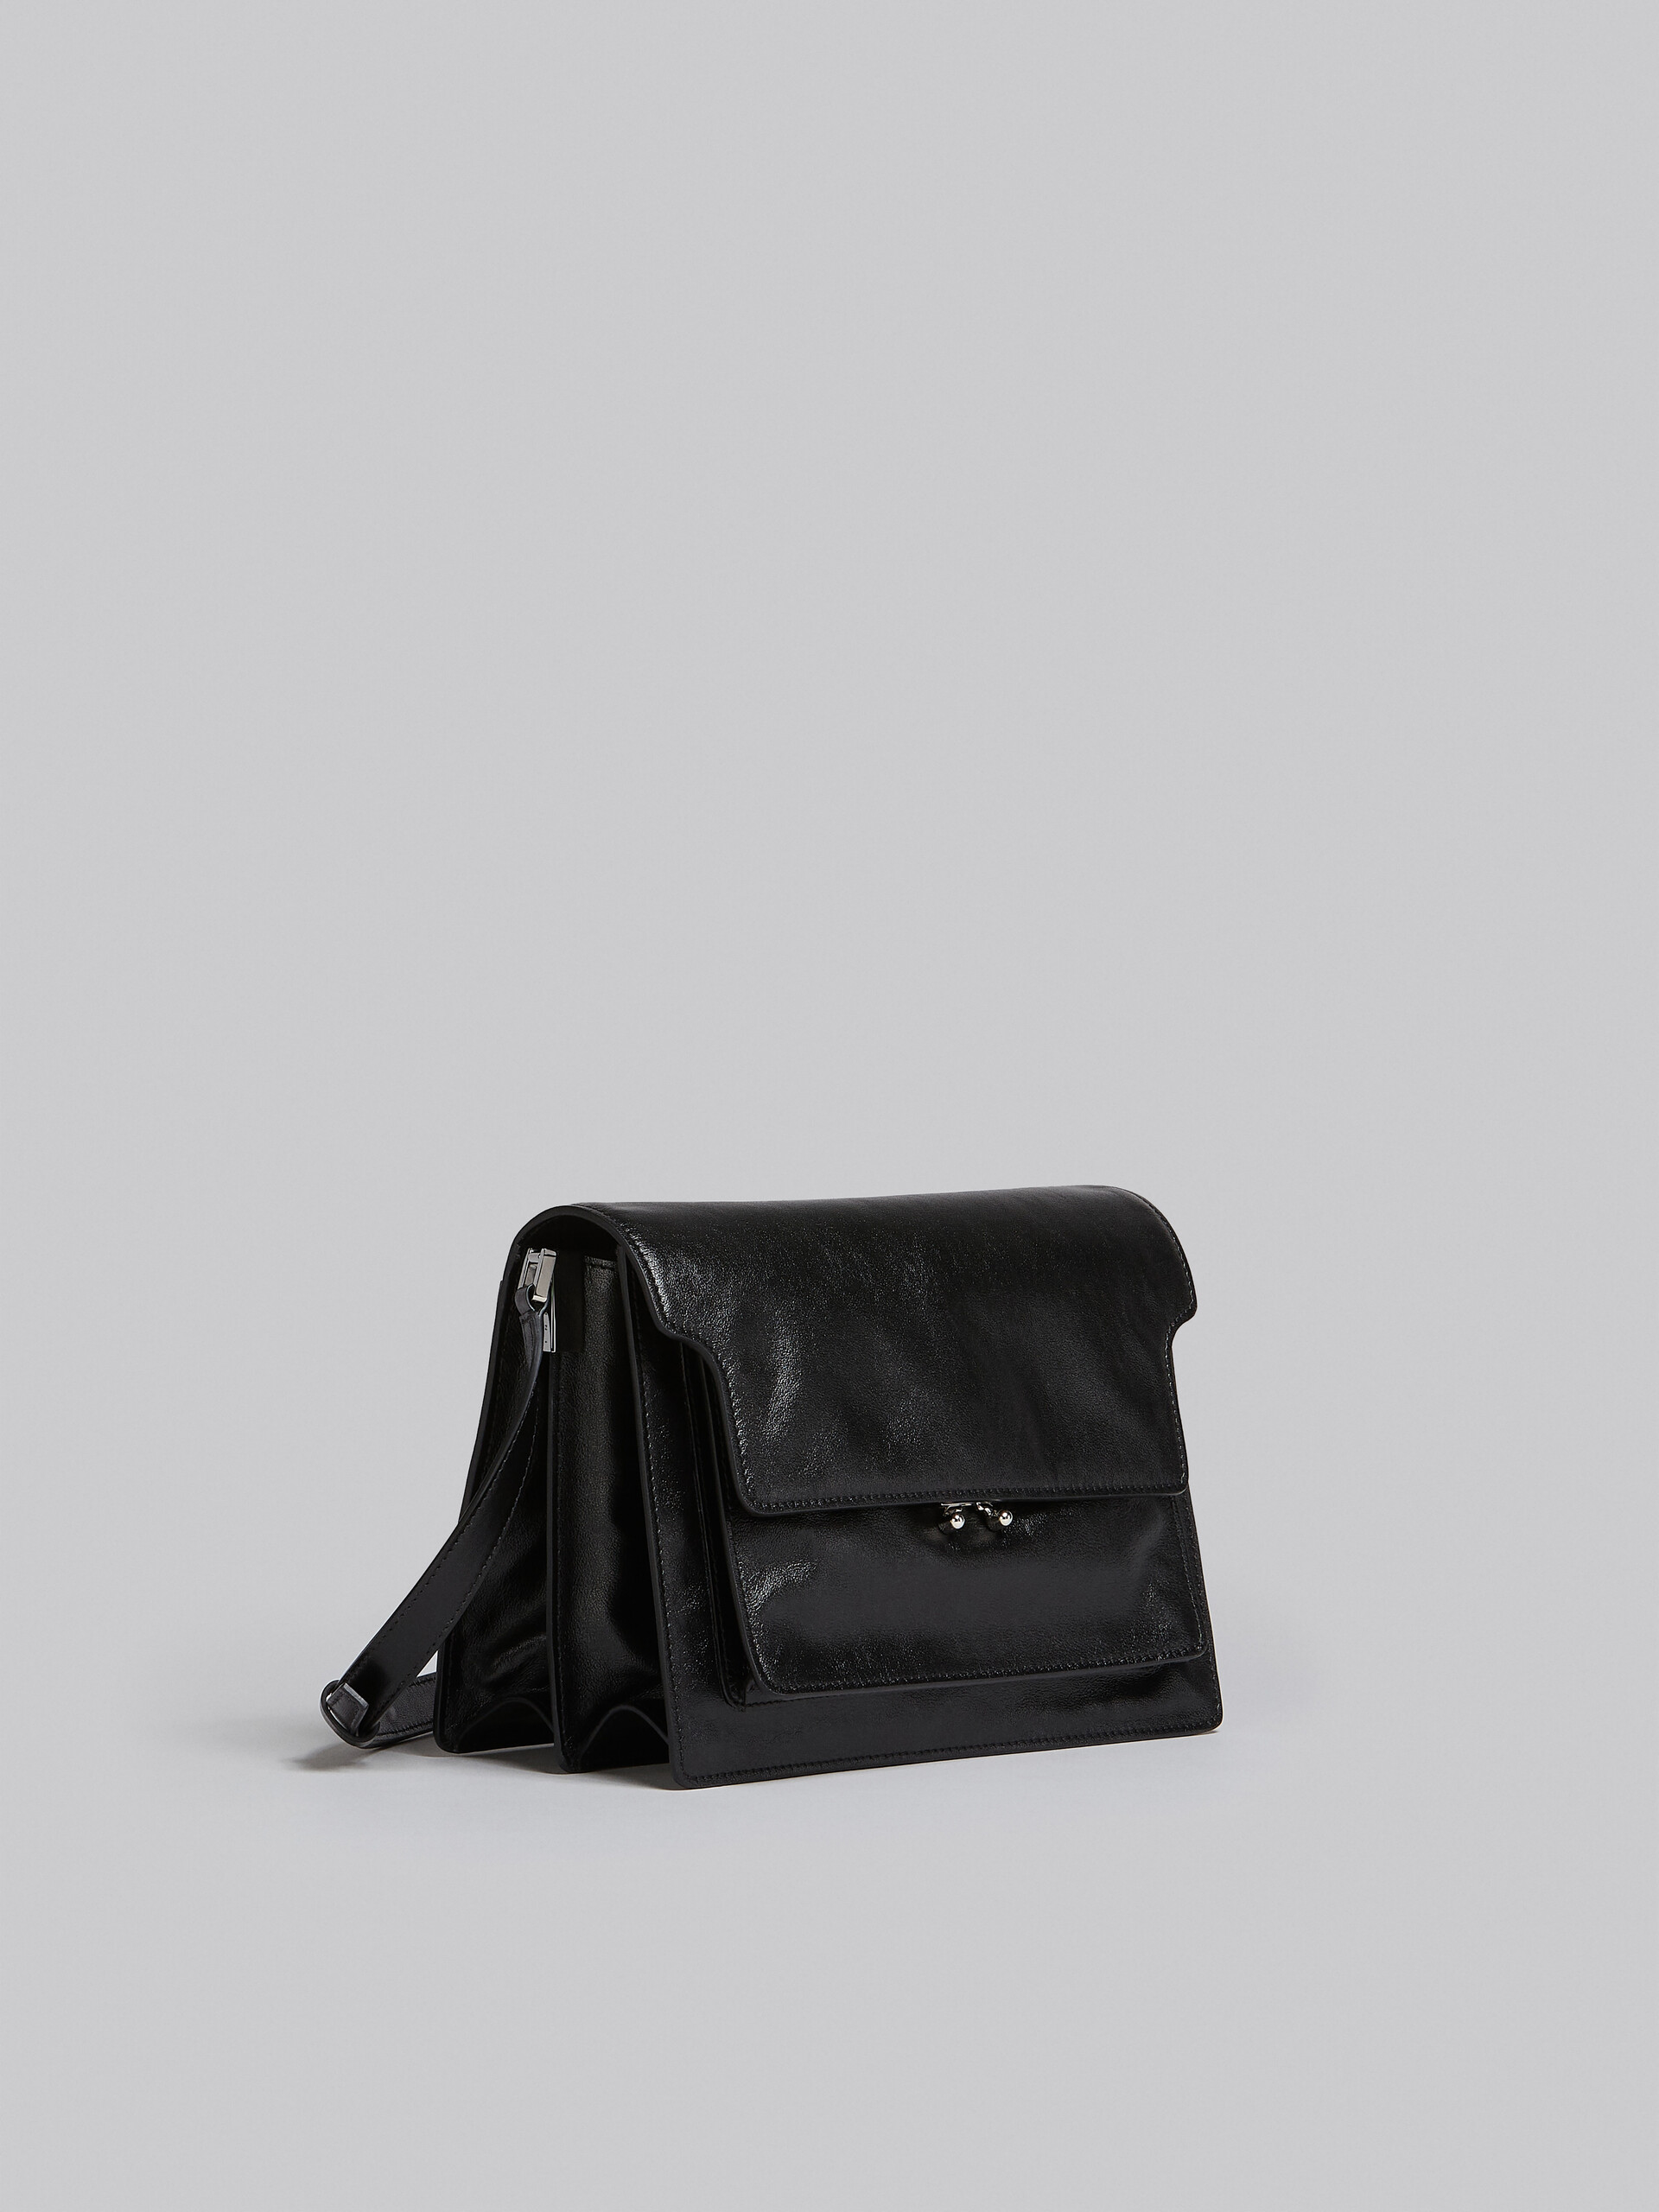 Trunk Soft Large Bag in black leather - Shoulder Bag - Image 6